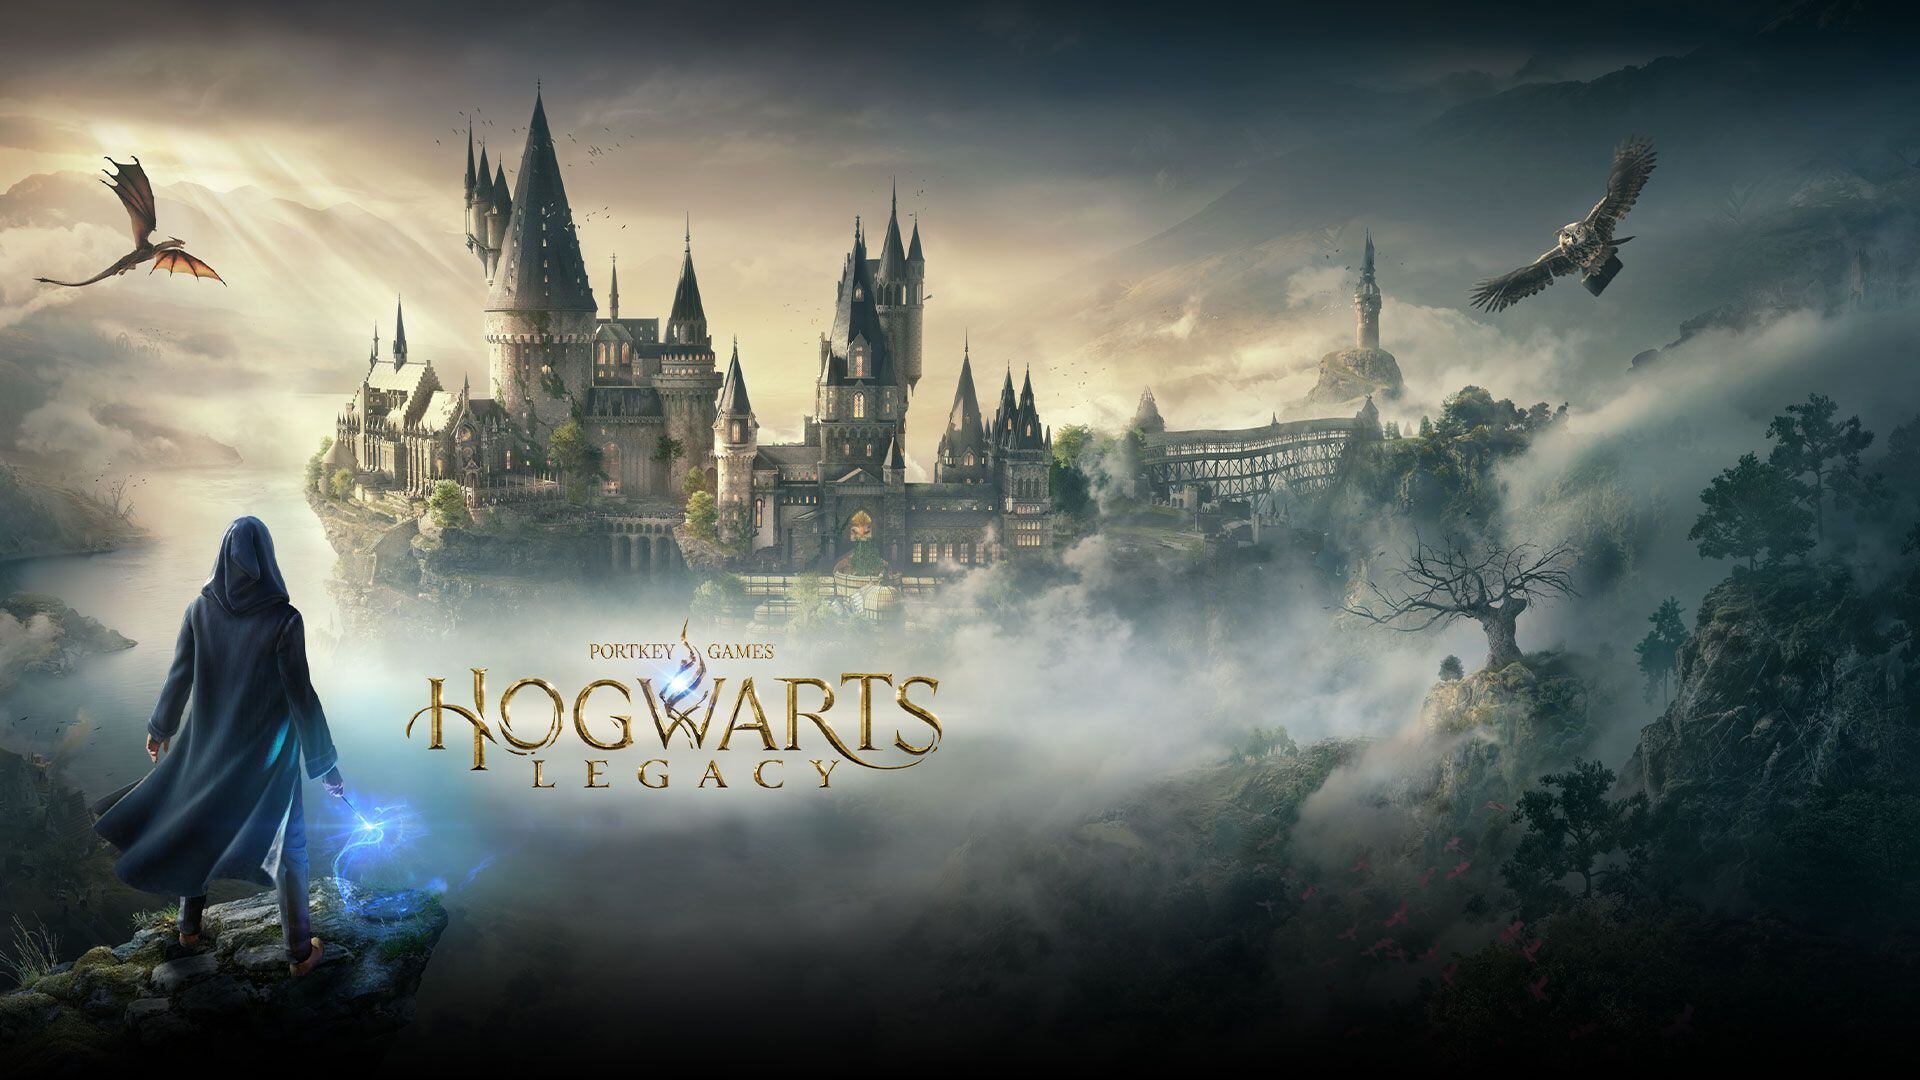 Para este mes habrá dos lanzamientos que darán de qué hablar PS VR 2 y Hogwarts Legacy.